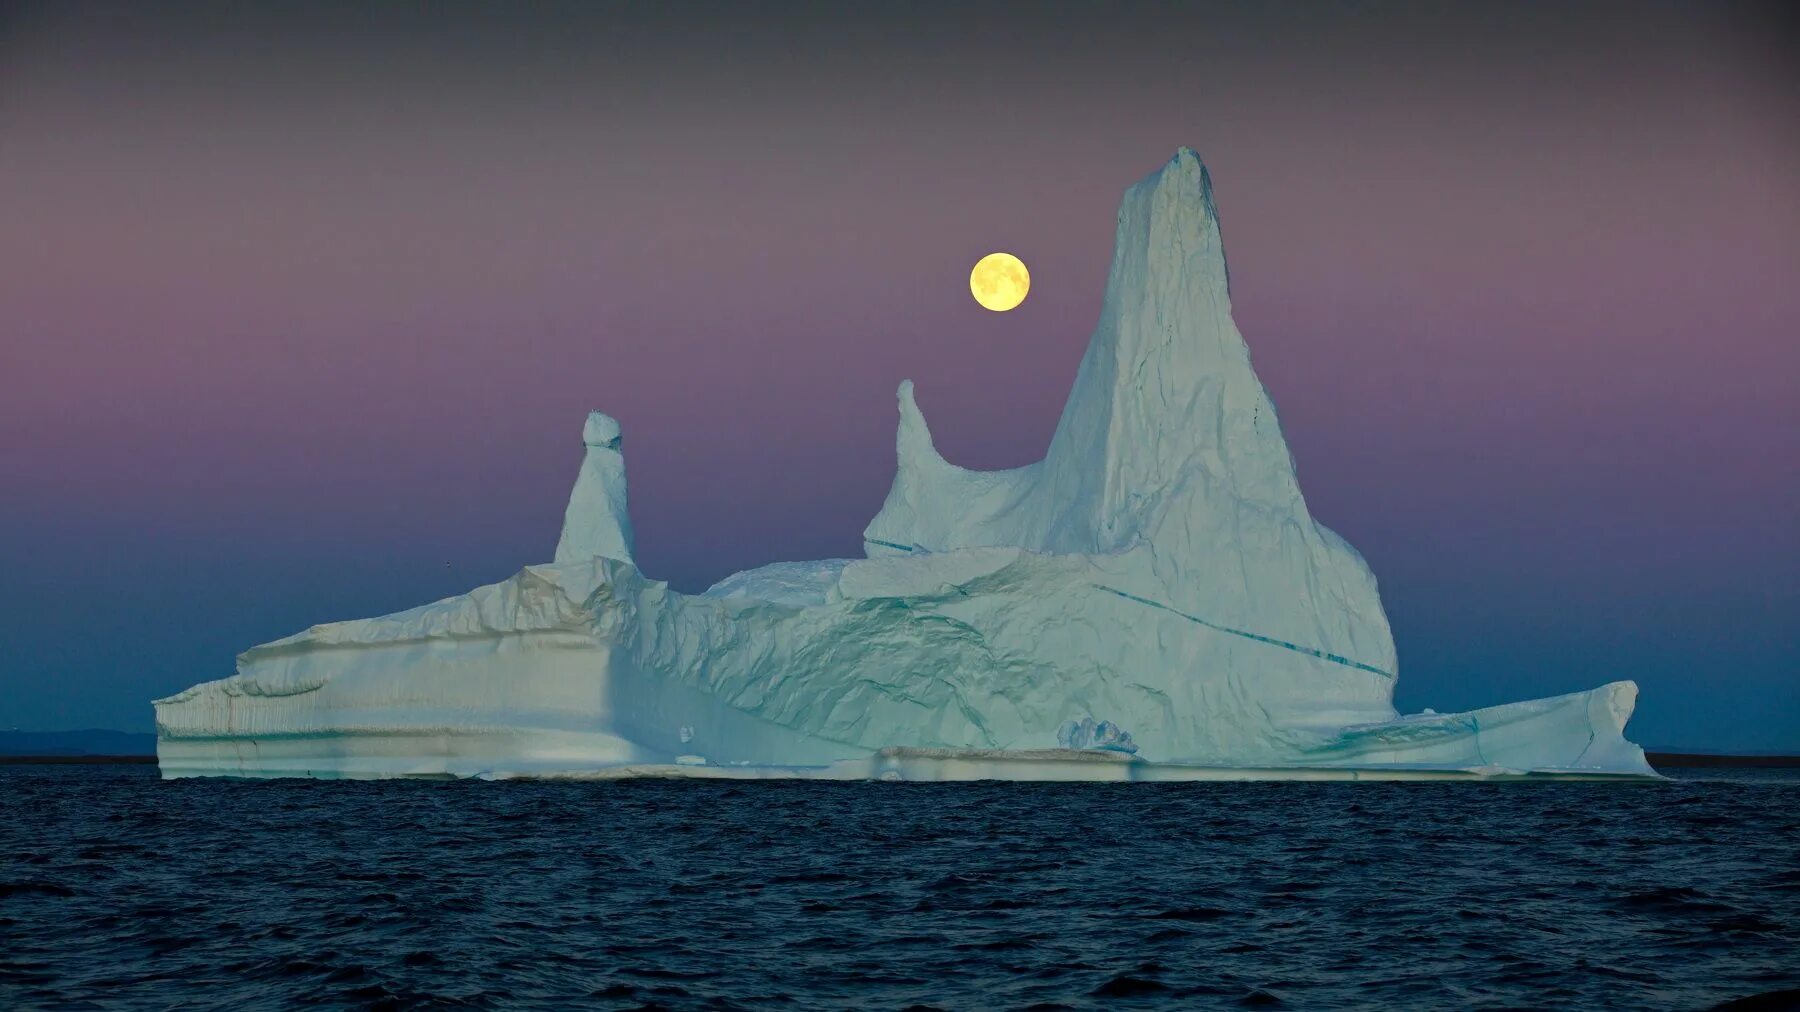 Антарктида Гренландия Арктика Северный Ледовитый океан. Ледовитый океан Айсберг. Айсберги Северного Ледовитого океана. Северный океан 9